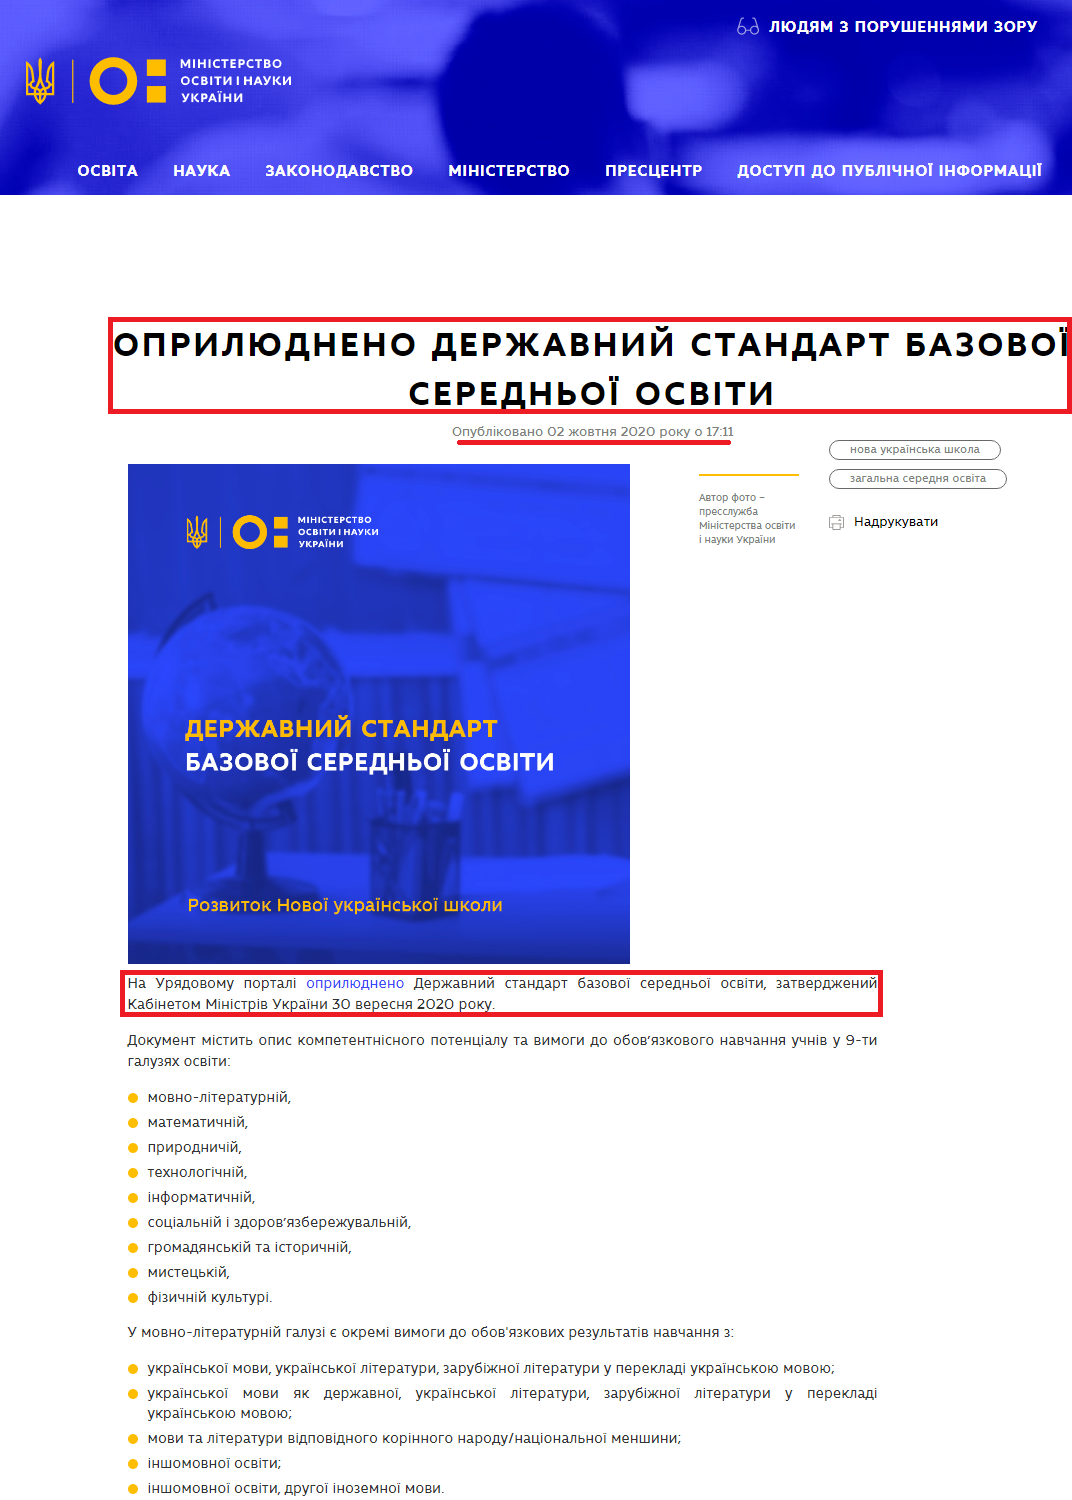 https://mon.gov.ua/ua/news/oprilyudneno-derzhavnij-standart-bazovoyi-serednoyi-osviti